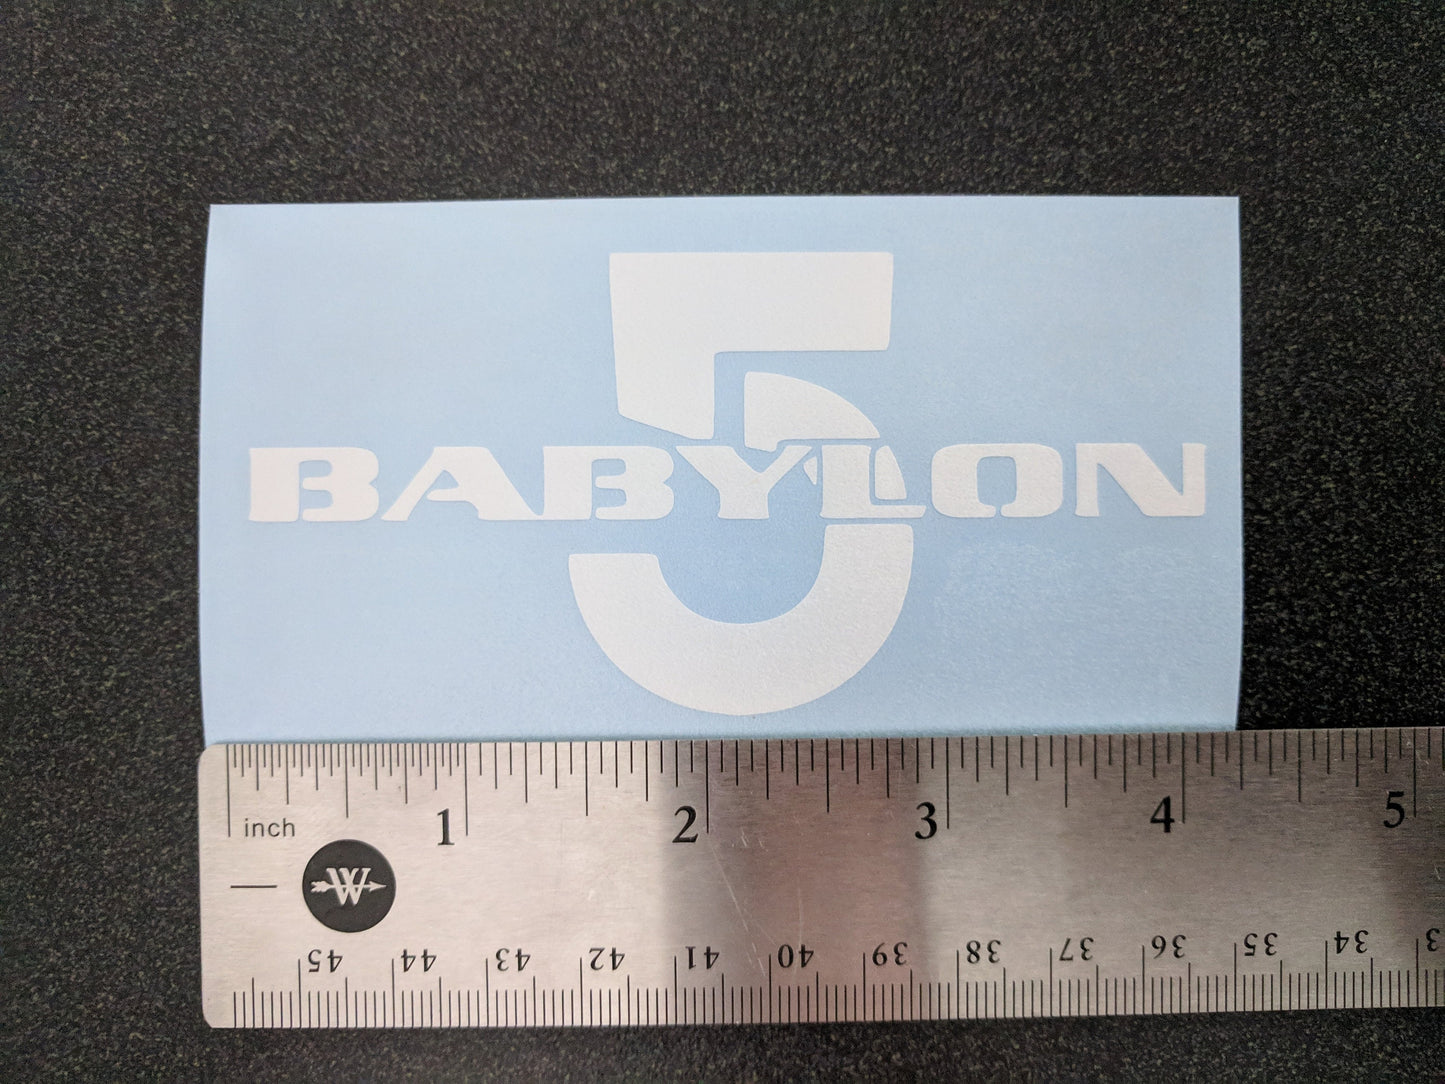 Babylon 5 Decals